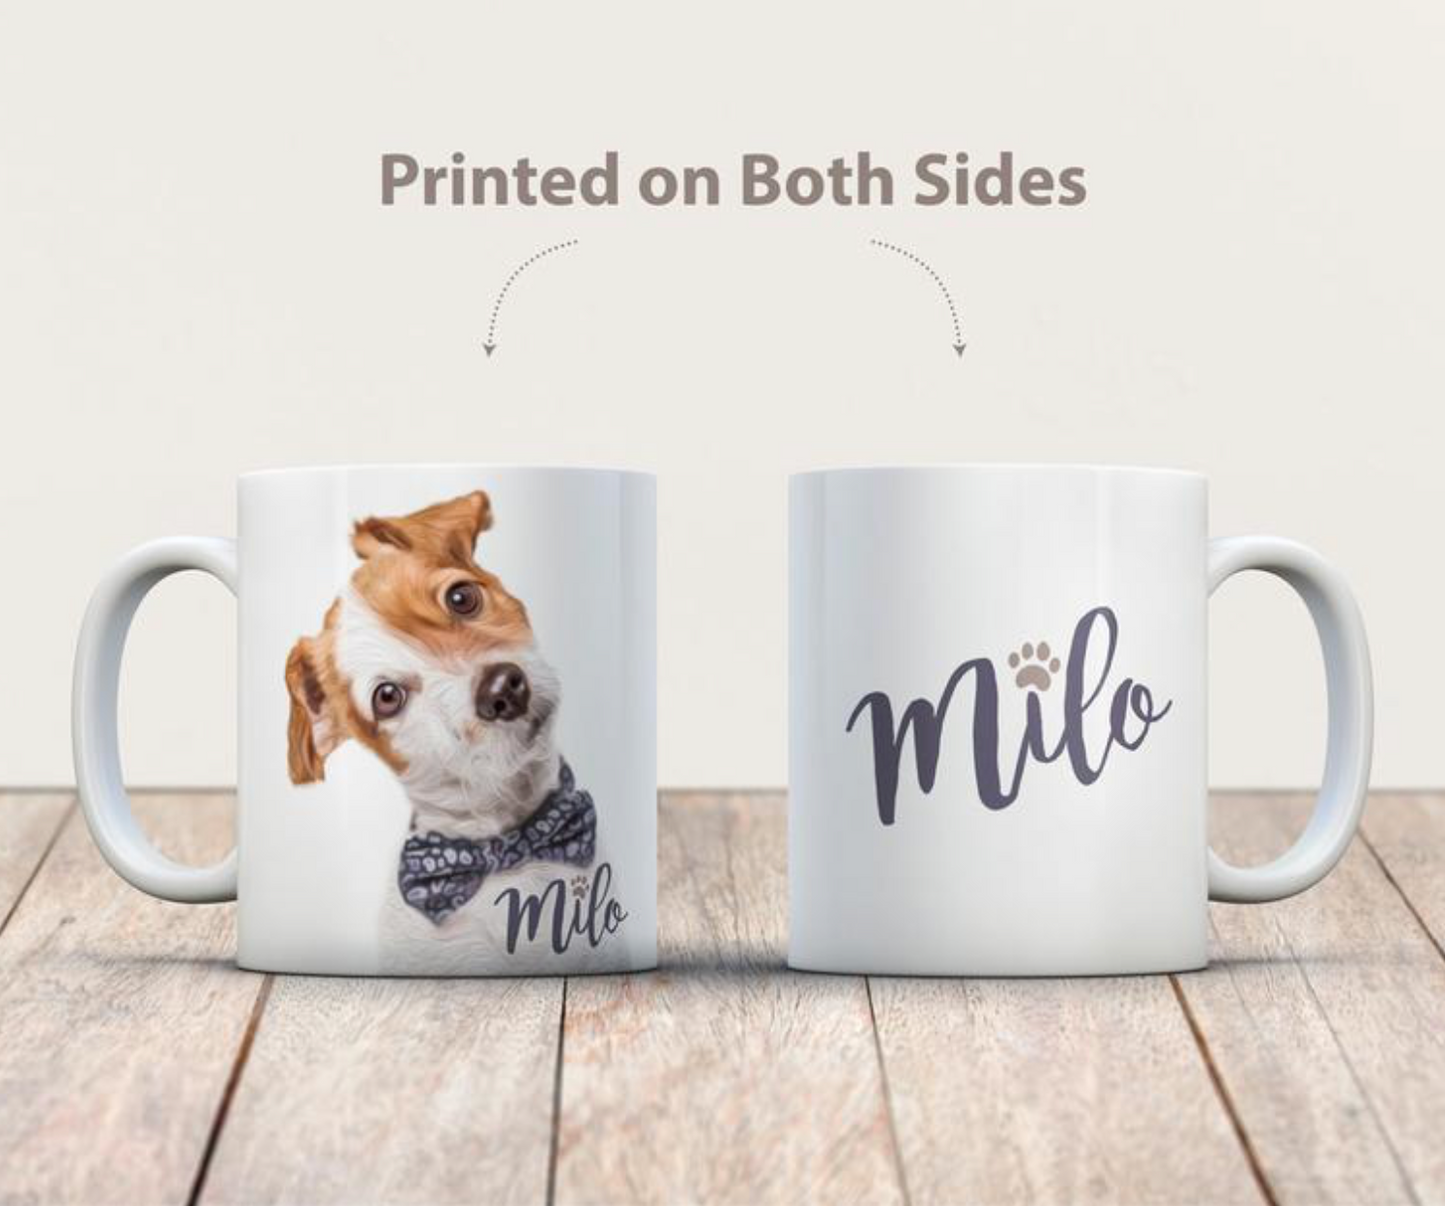 Custom Pet Coffee Mug  Dog Cat Photo Personalize Dog Mug Add Your Photo 11oz